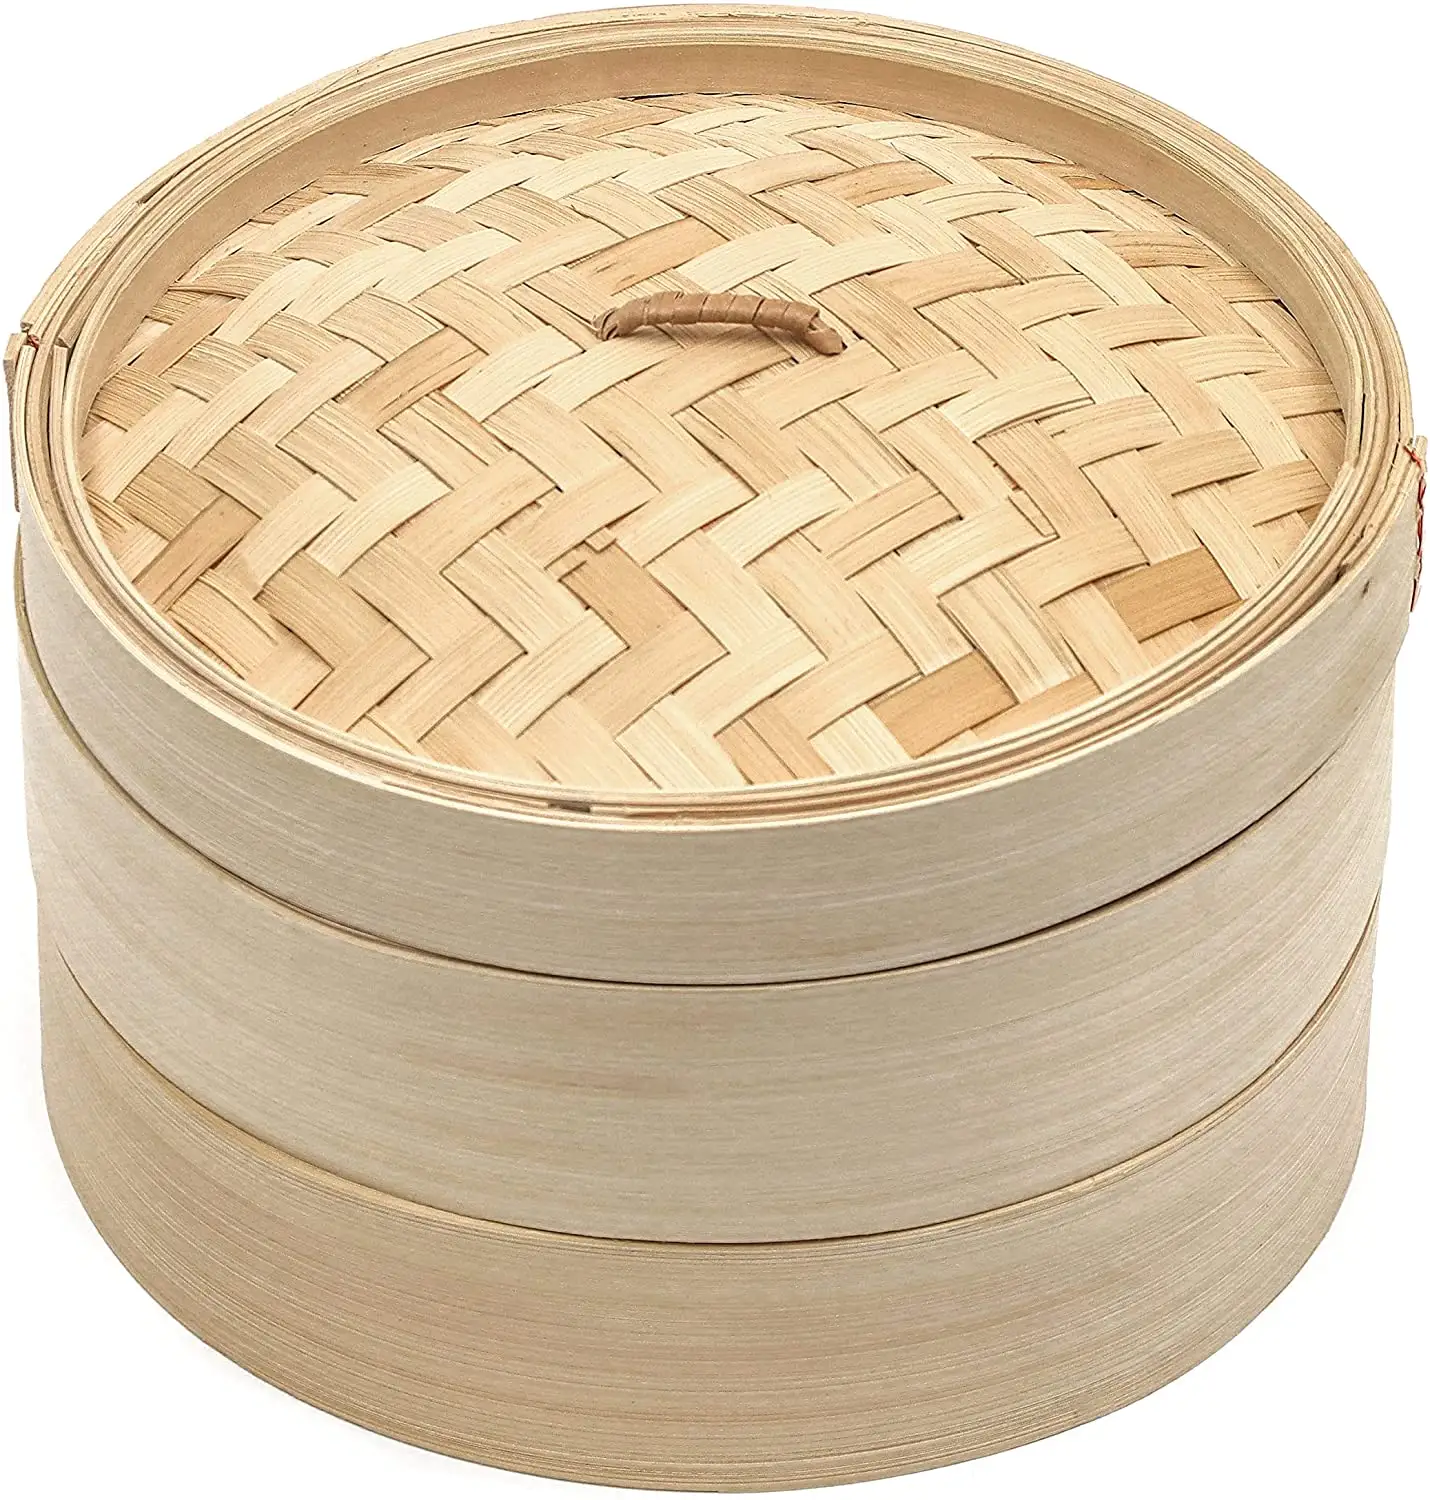 100% Natural Handmade Basket Household Bamboo Steamer